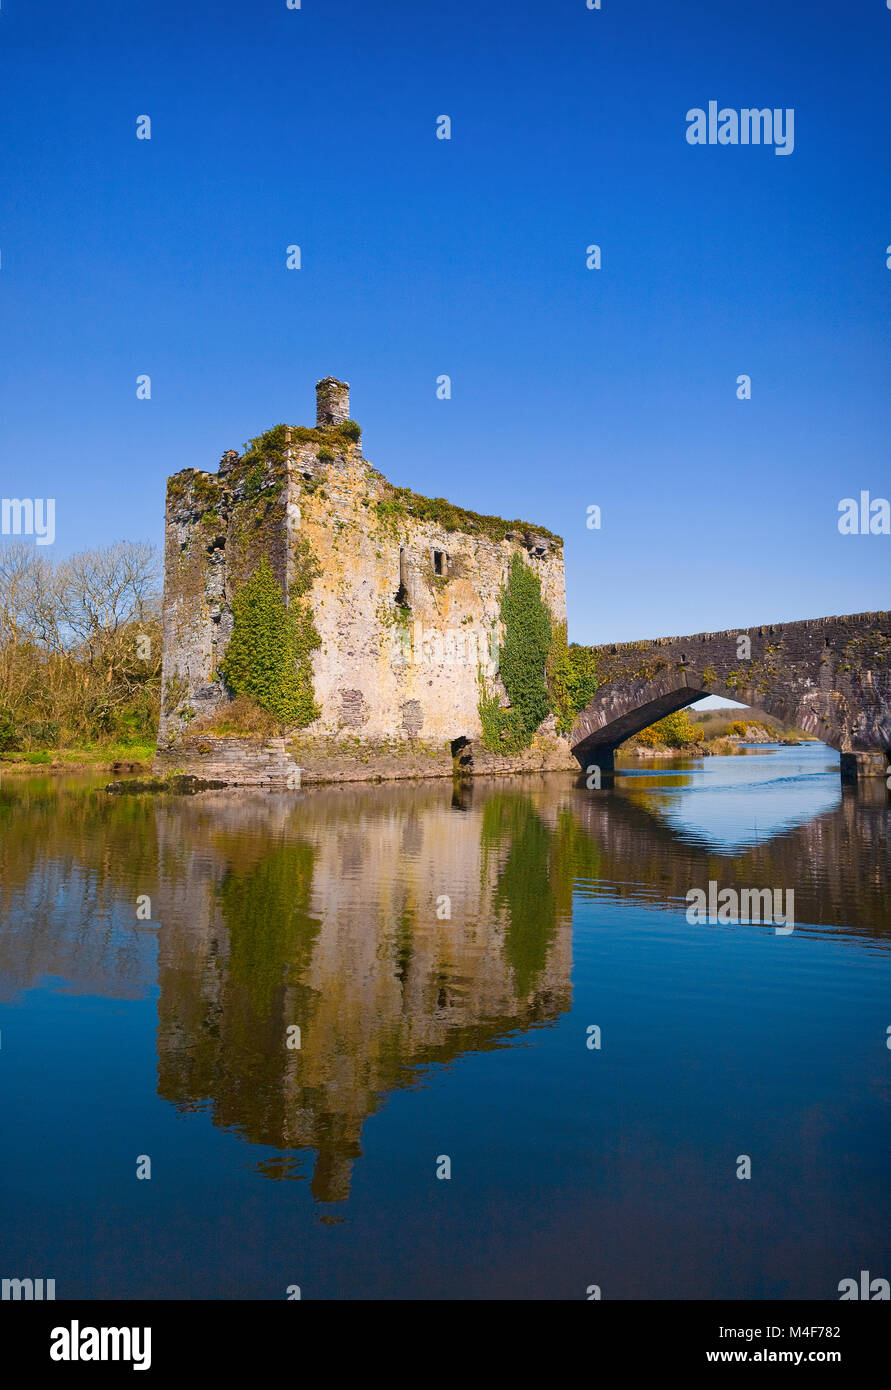 Castillo de Carrigadrohid del siglo XV con vistas al río Lee cerca de la aldea de Canovee, Condado de Cork, Irlanda. Foto de stock